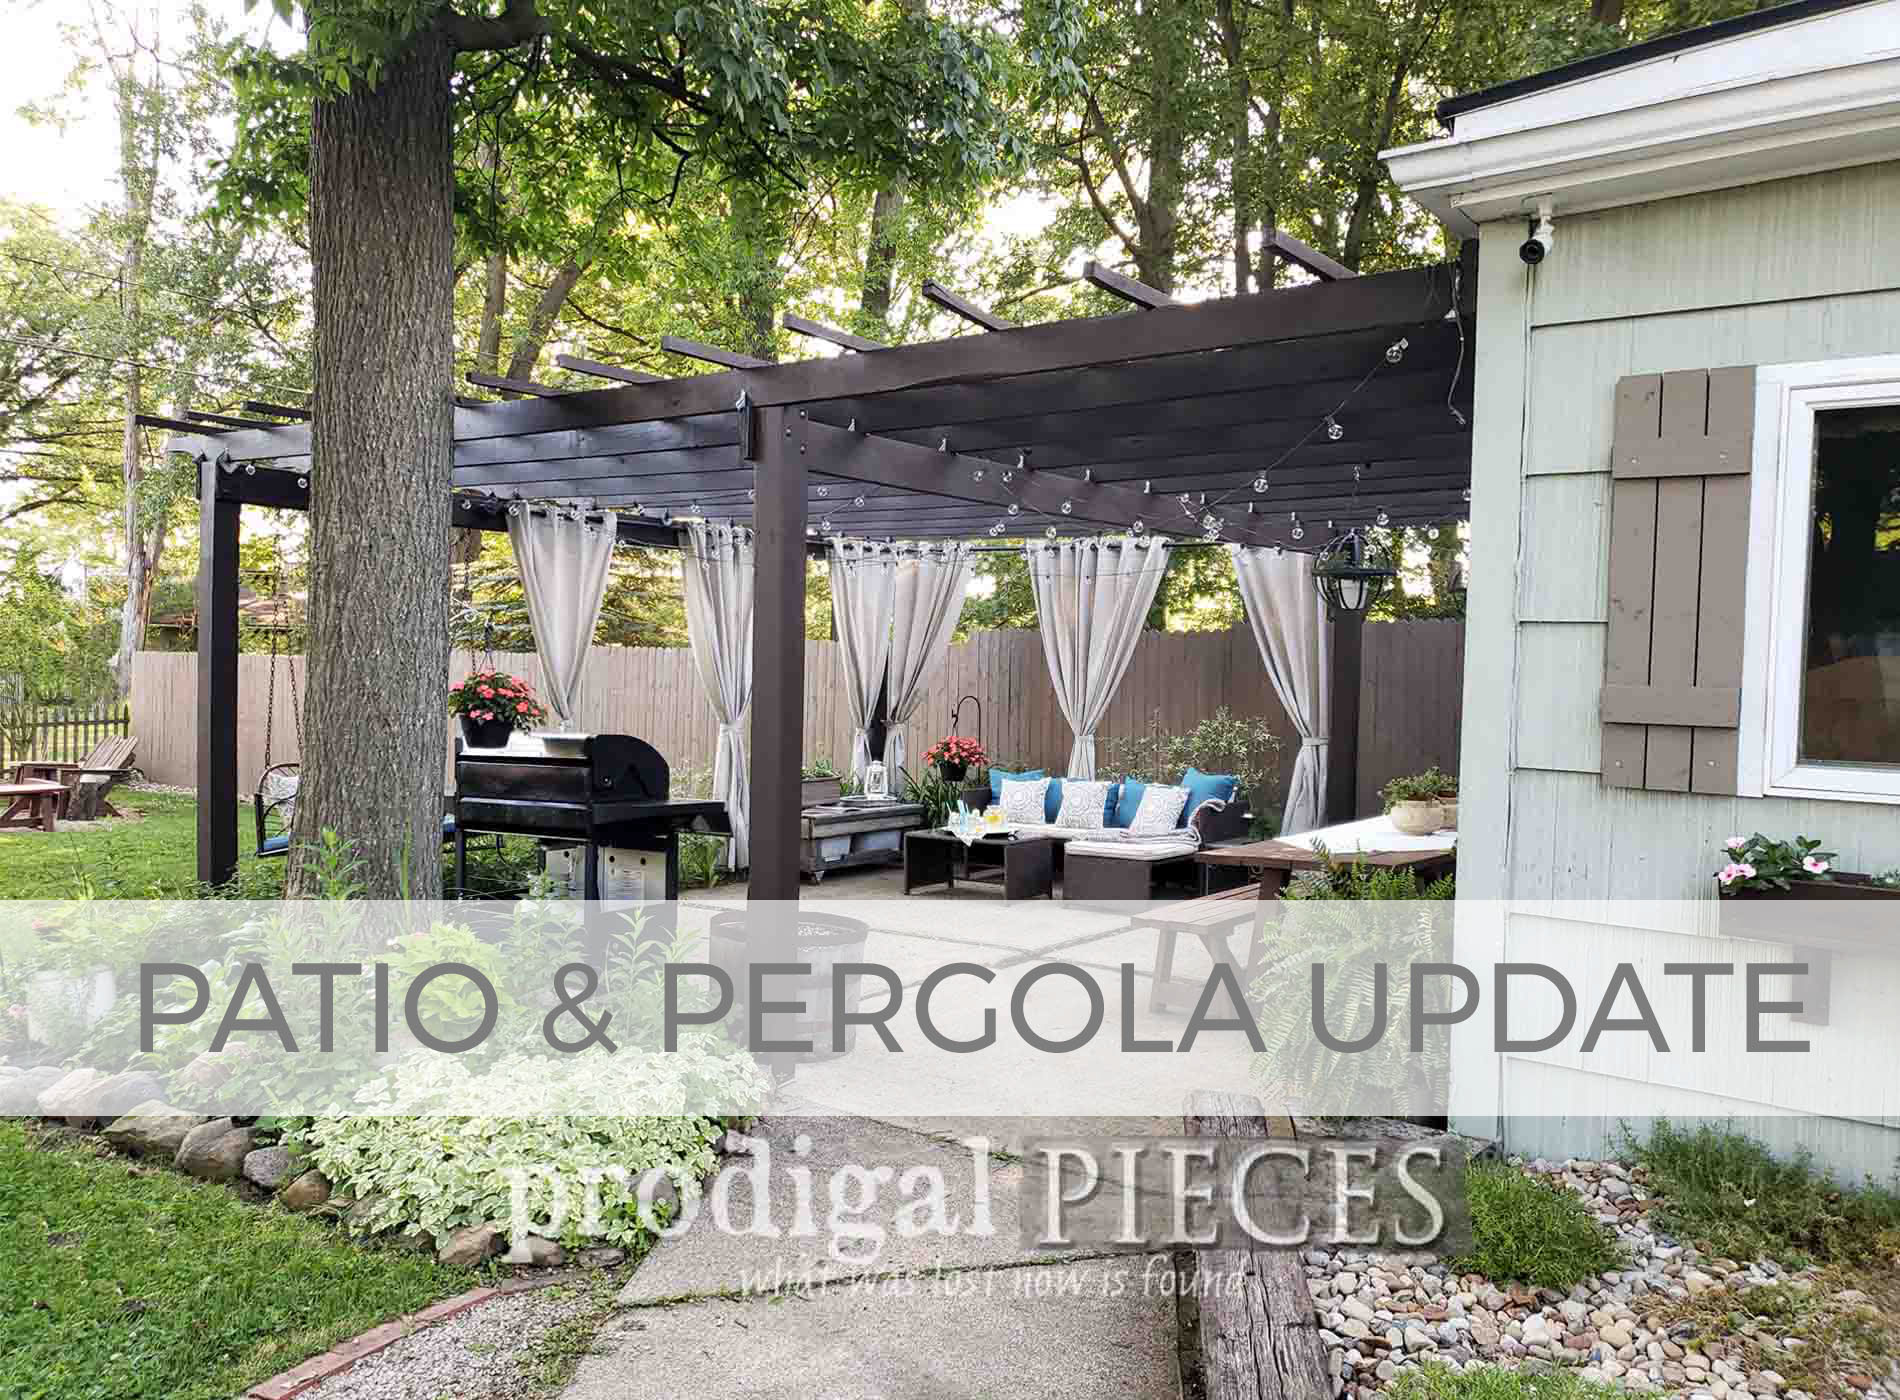 DIY Patio & Pergola Update by Prodigal Pieces | prodigalpieces.com